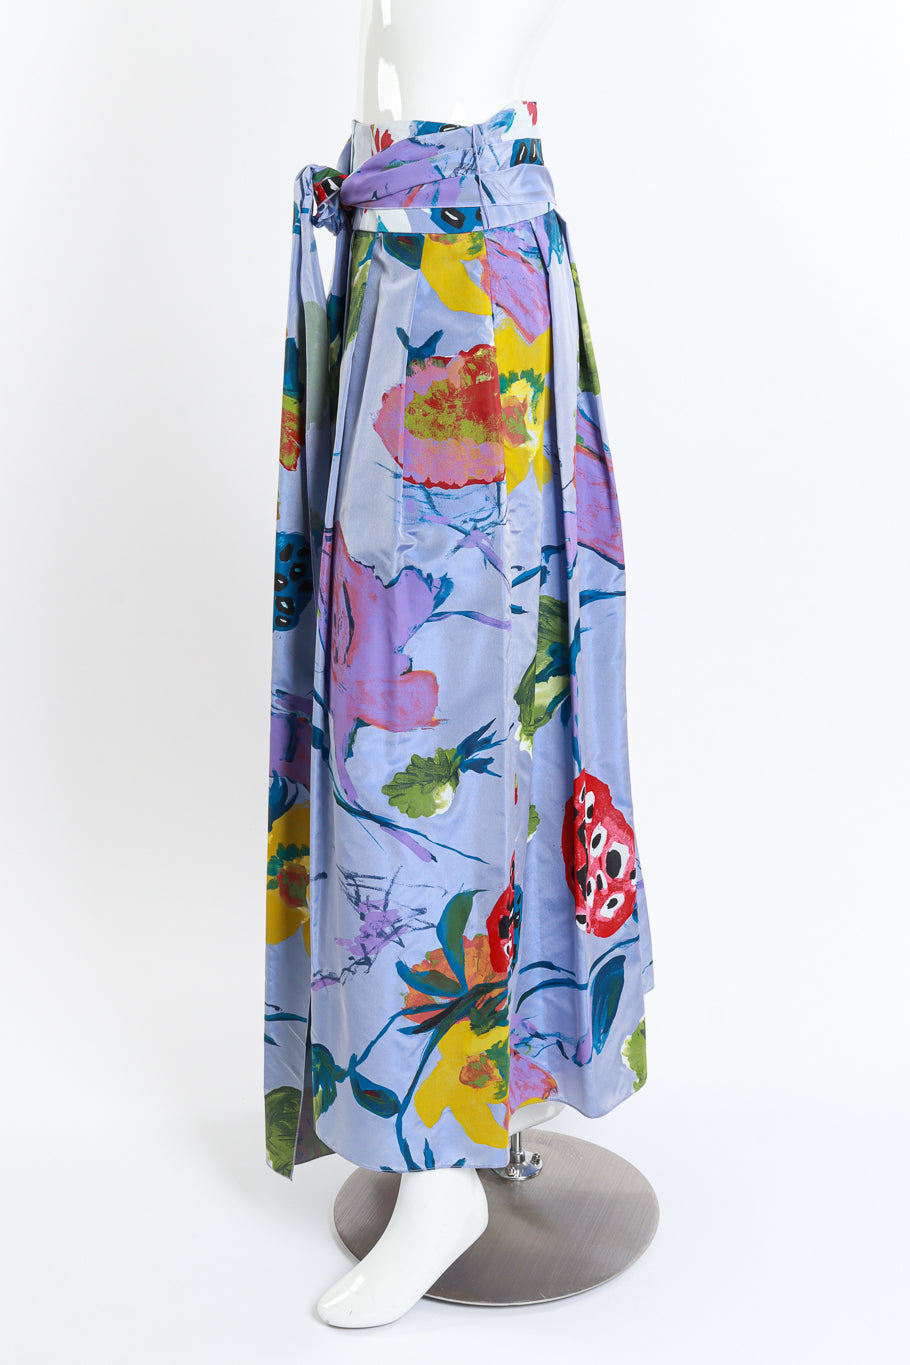 Vintage Christian Lacroix Floral Paint Print Skirt side on mannequin @recess la